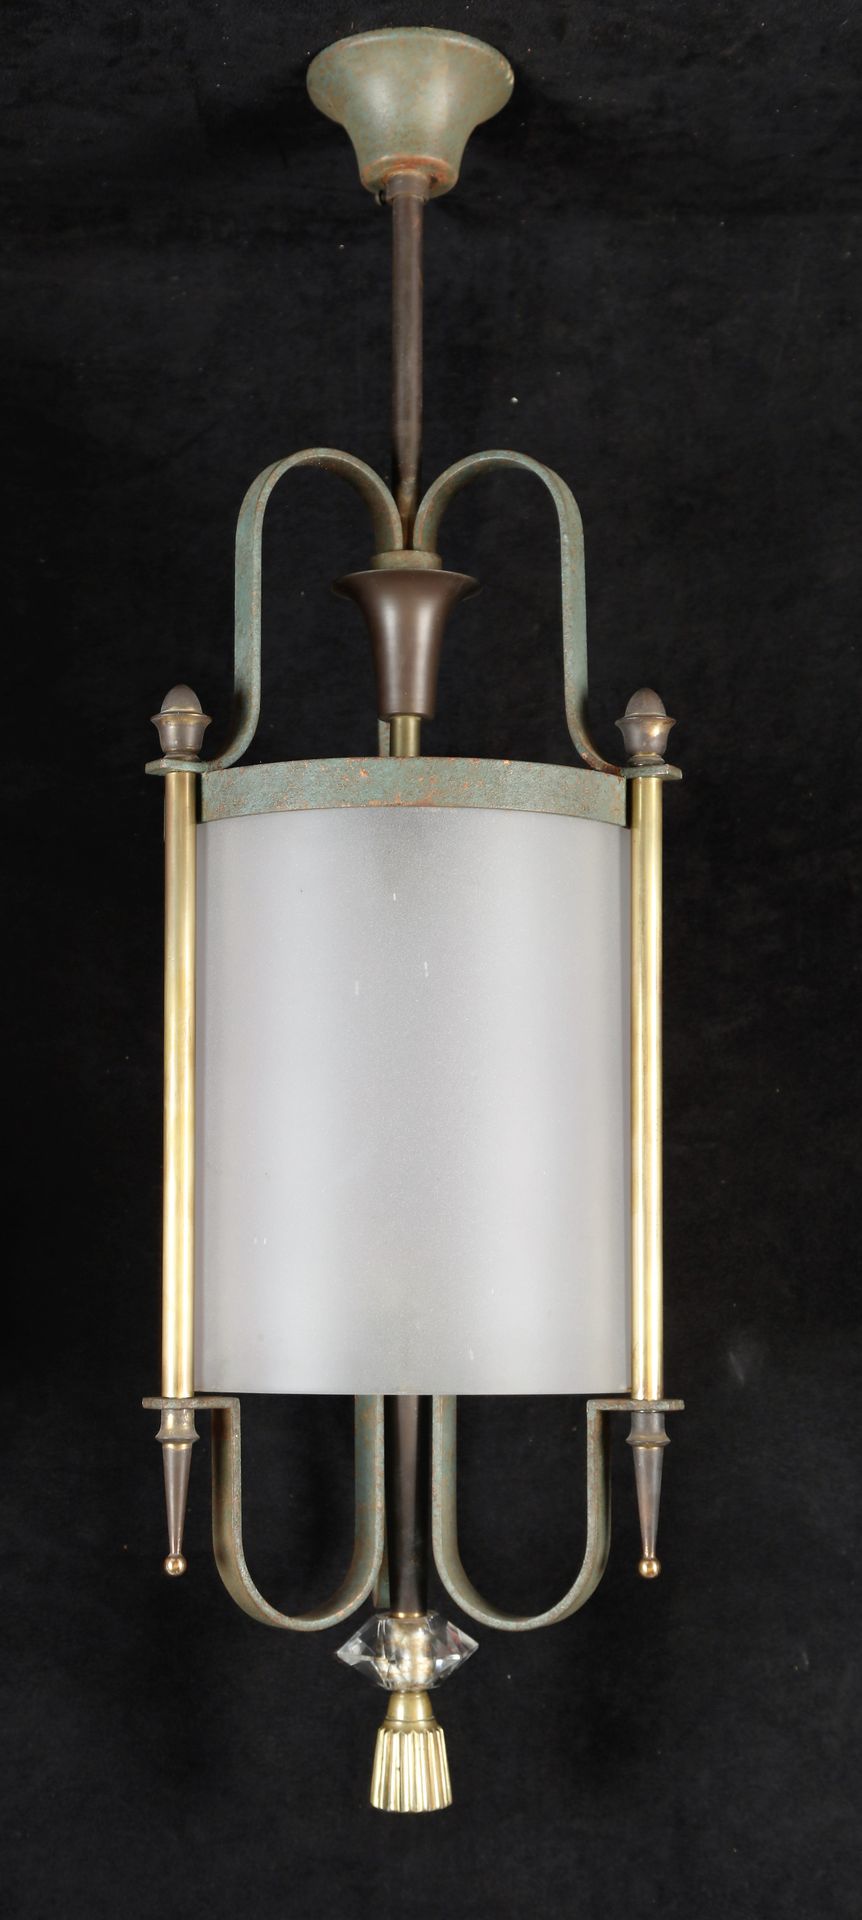 Null Zylindrische Laterne, sandgestrahltes Glas, Metall und Glas. Um 1940. 75X18